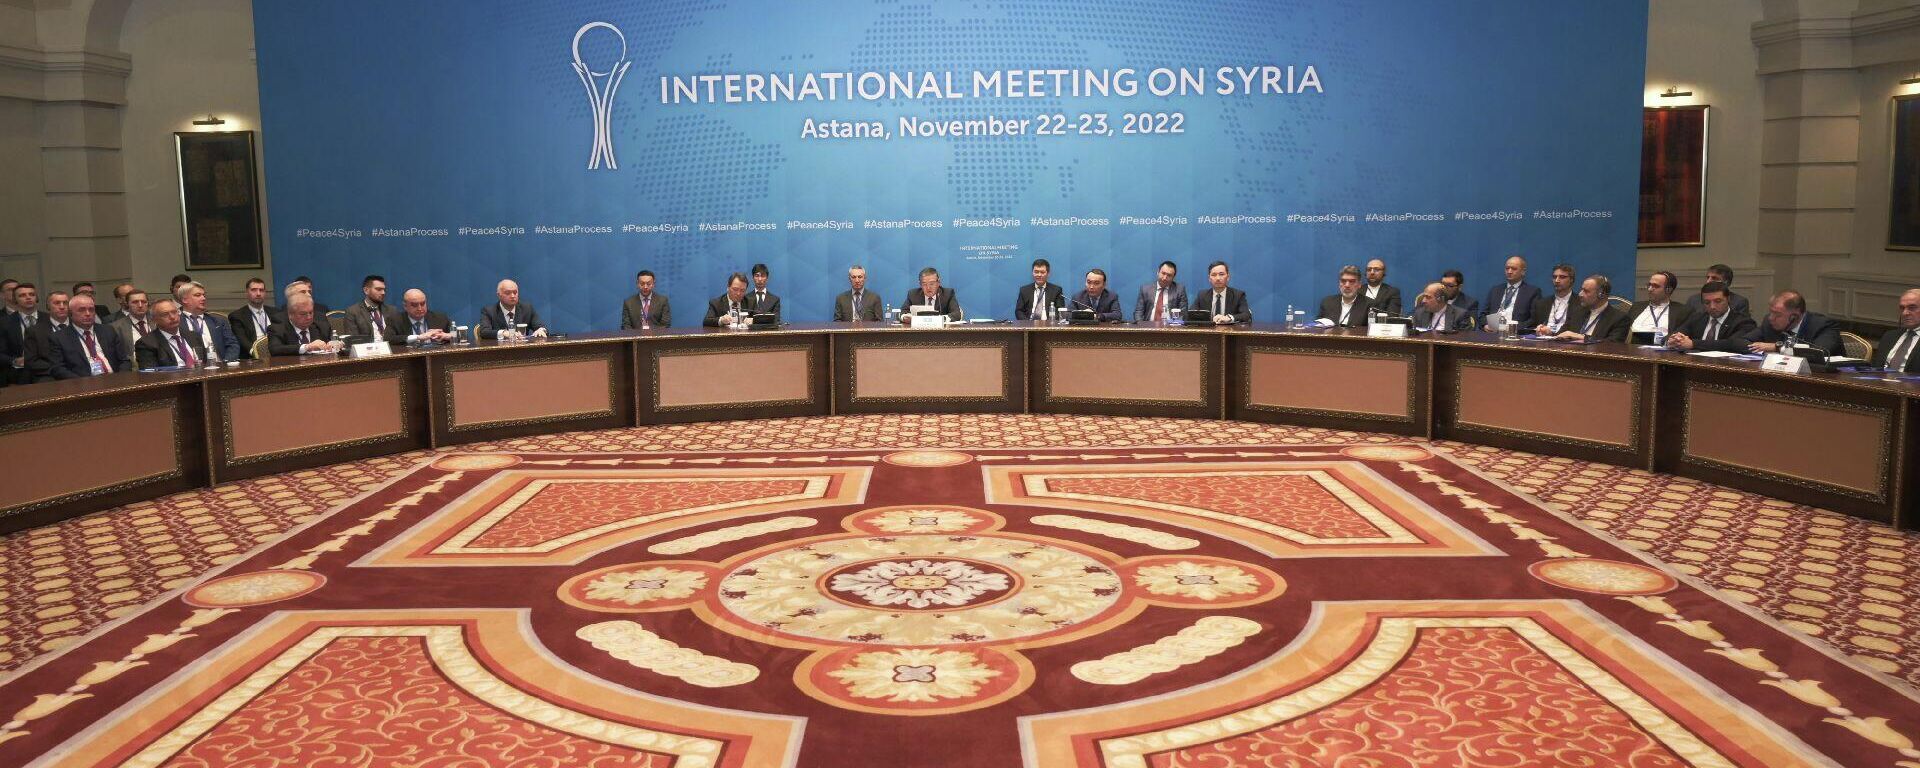 19-ый раунд сирийских переговоров в Астане, 23 ноября 2022 года - Sputnik Казахстан, 1920, 23.11.2022